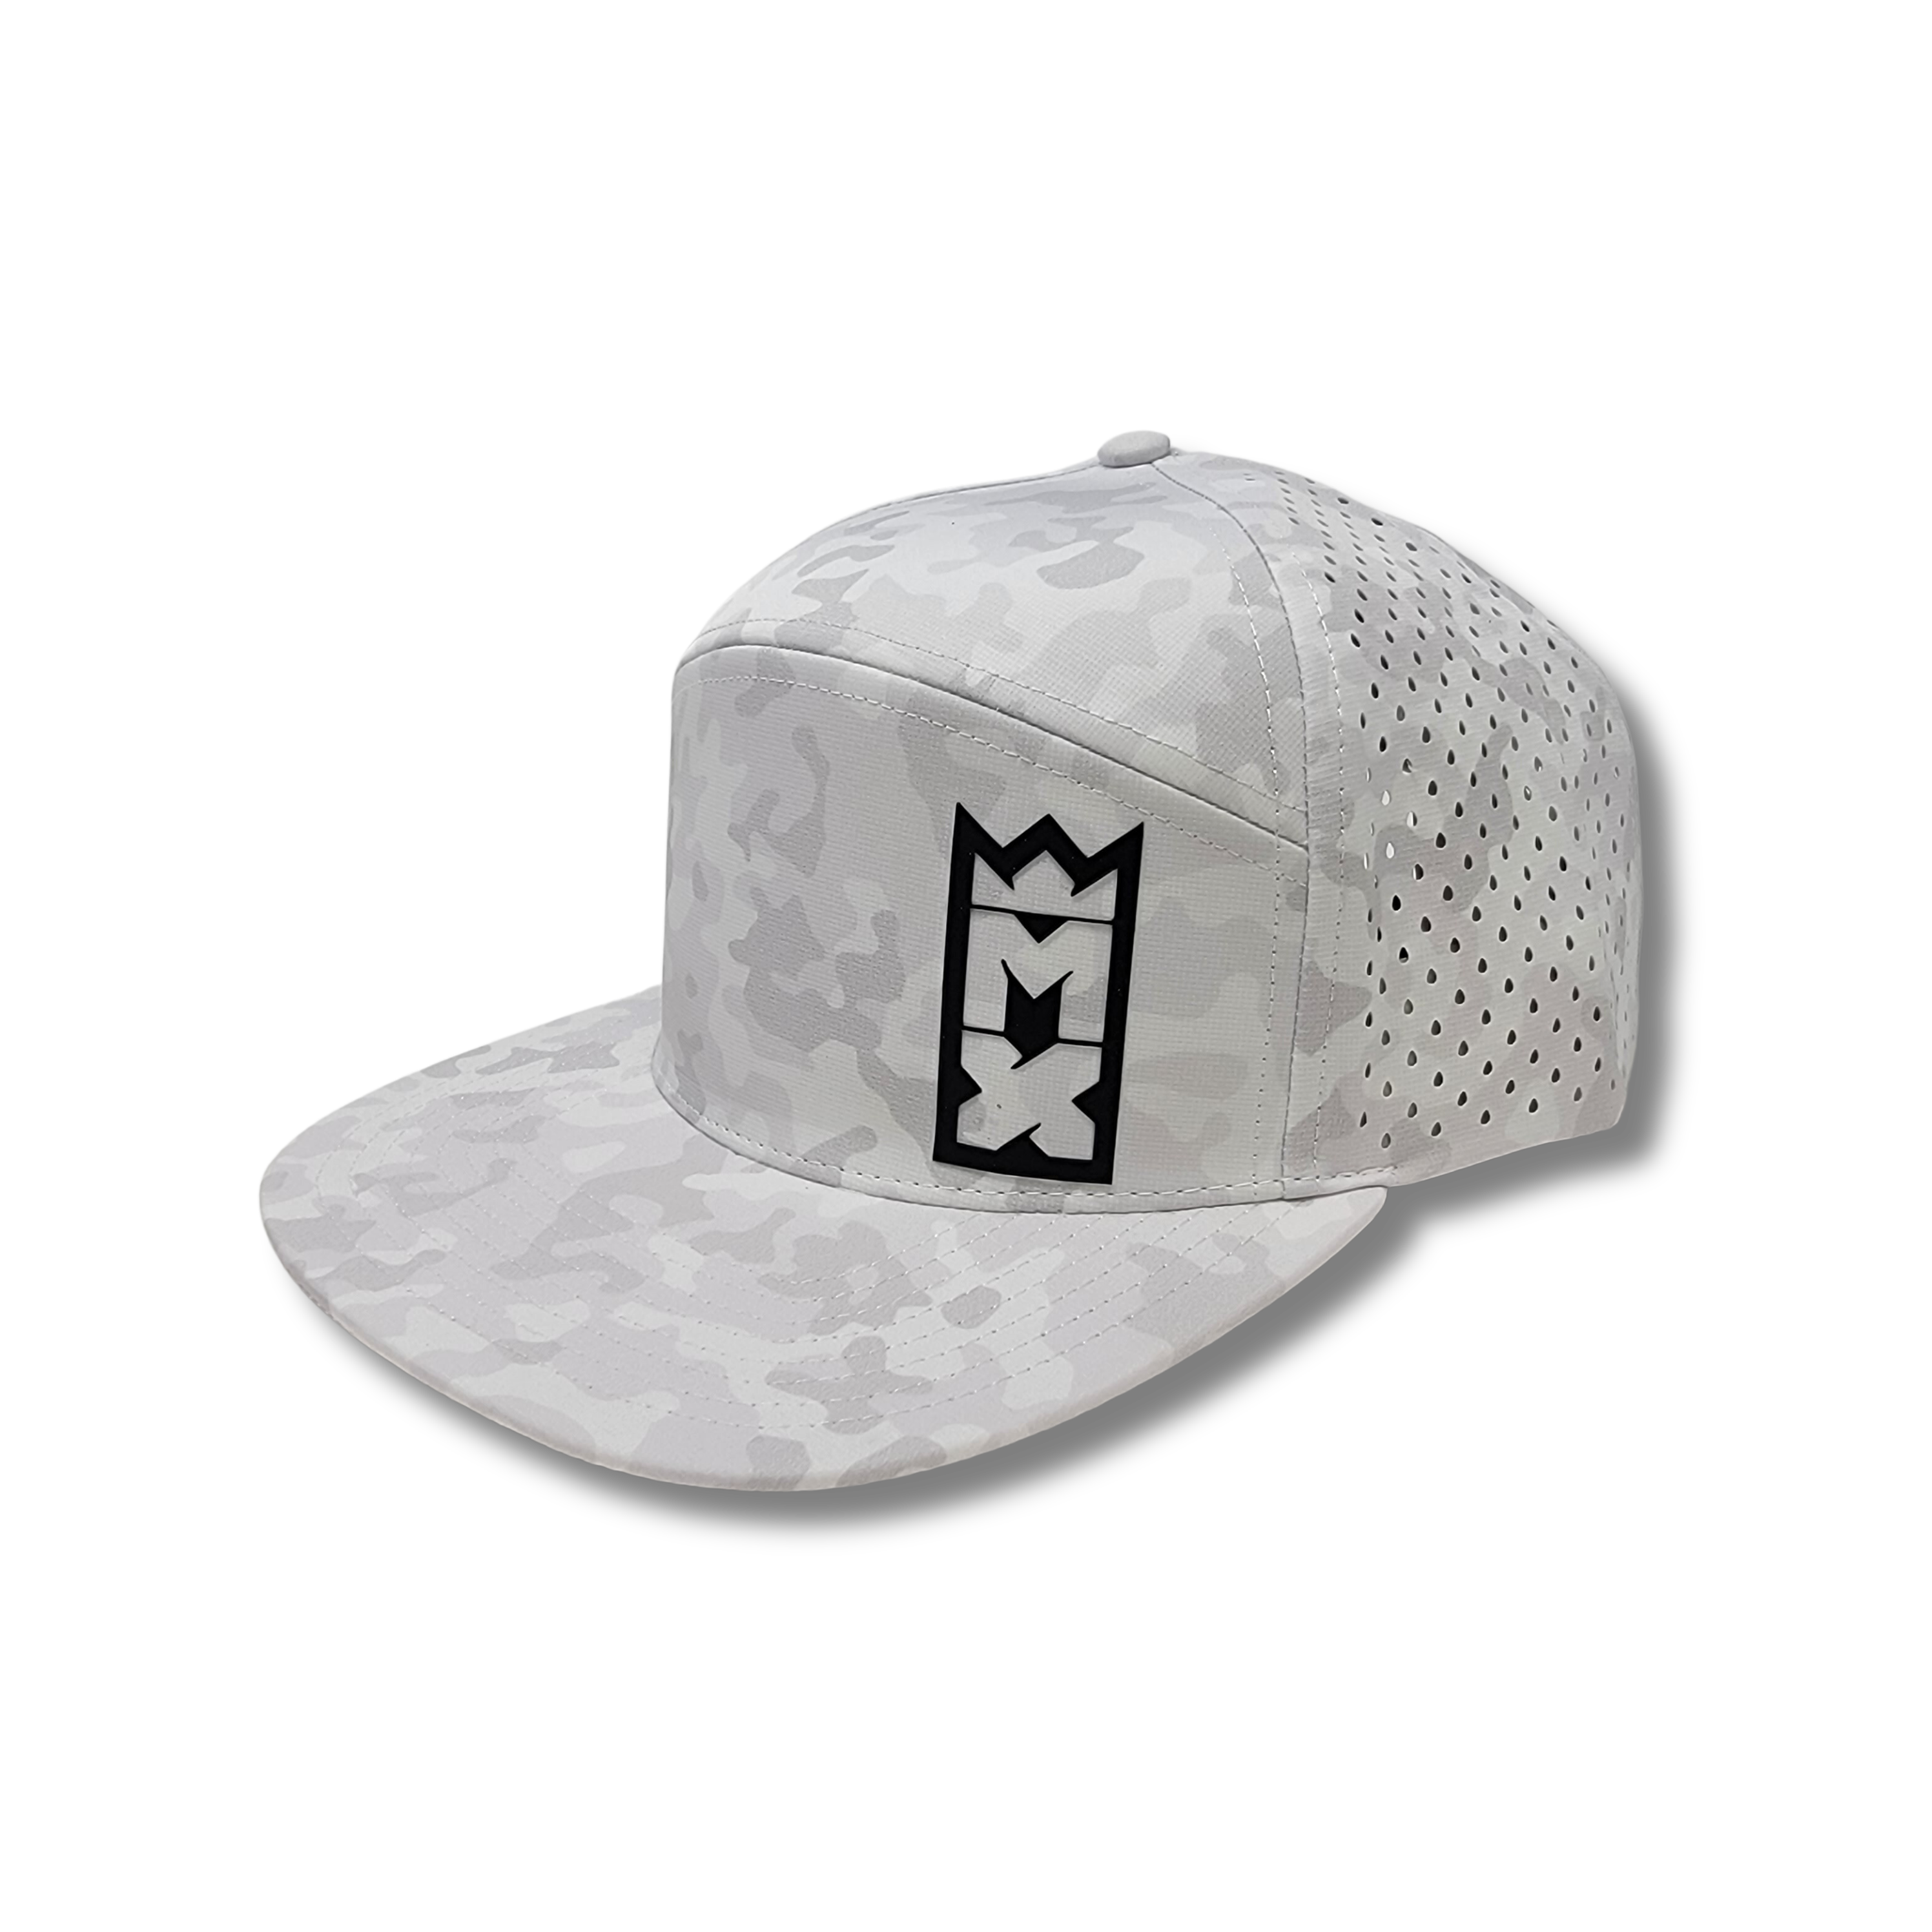 MX Hats